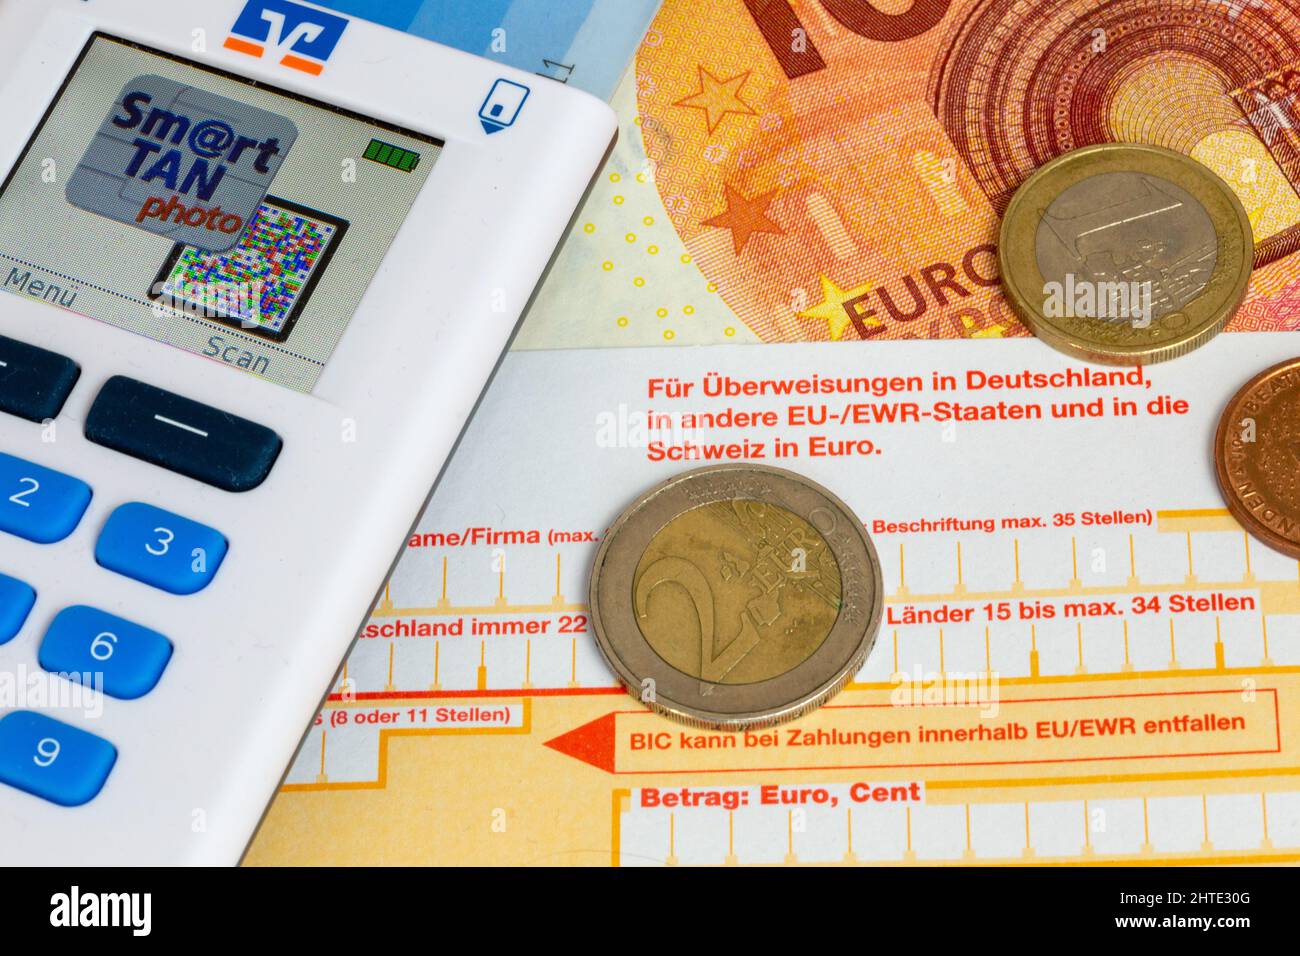 Image symbole des transactions de paiement : gros plan d'un bordereau de virement bancaire avec des pièces en euros, des factures en euros et un générateur de TAN Banque D'Images